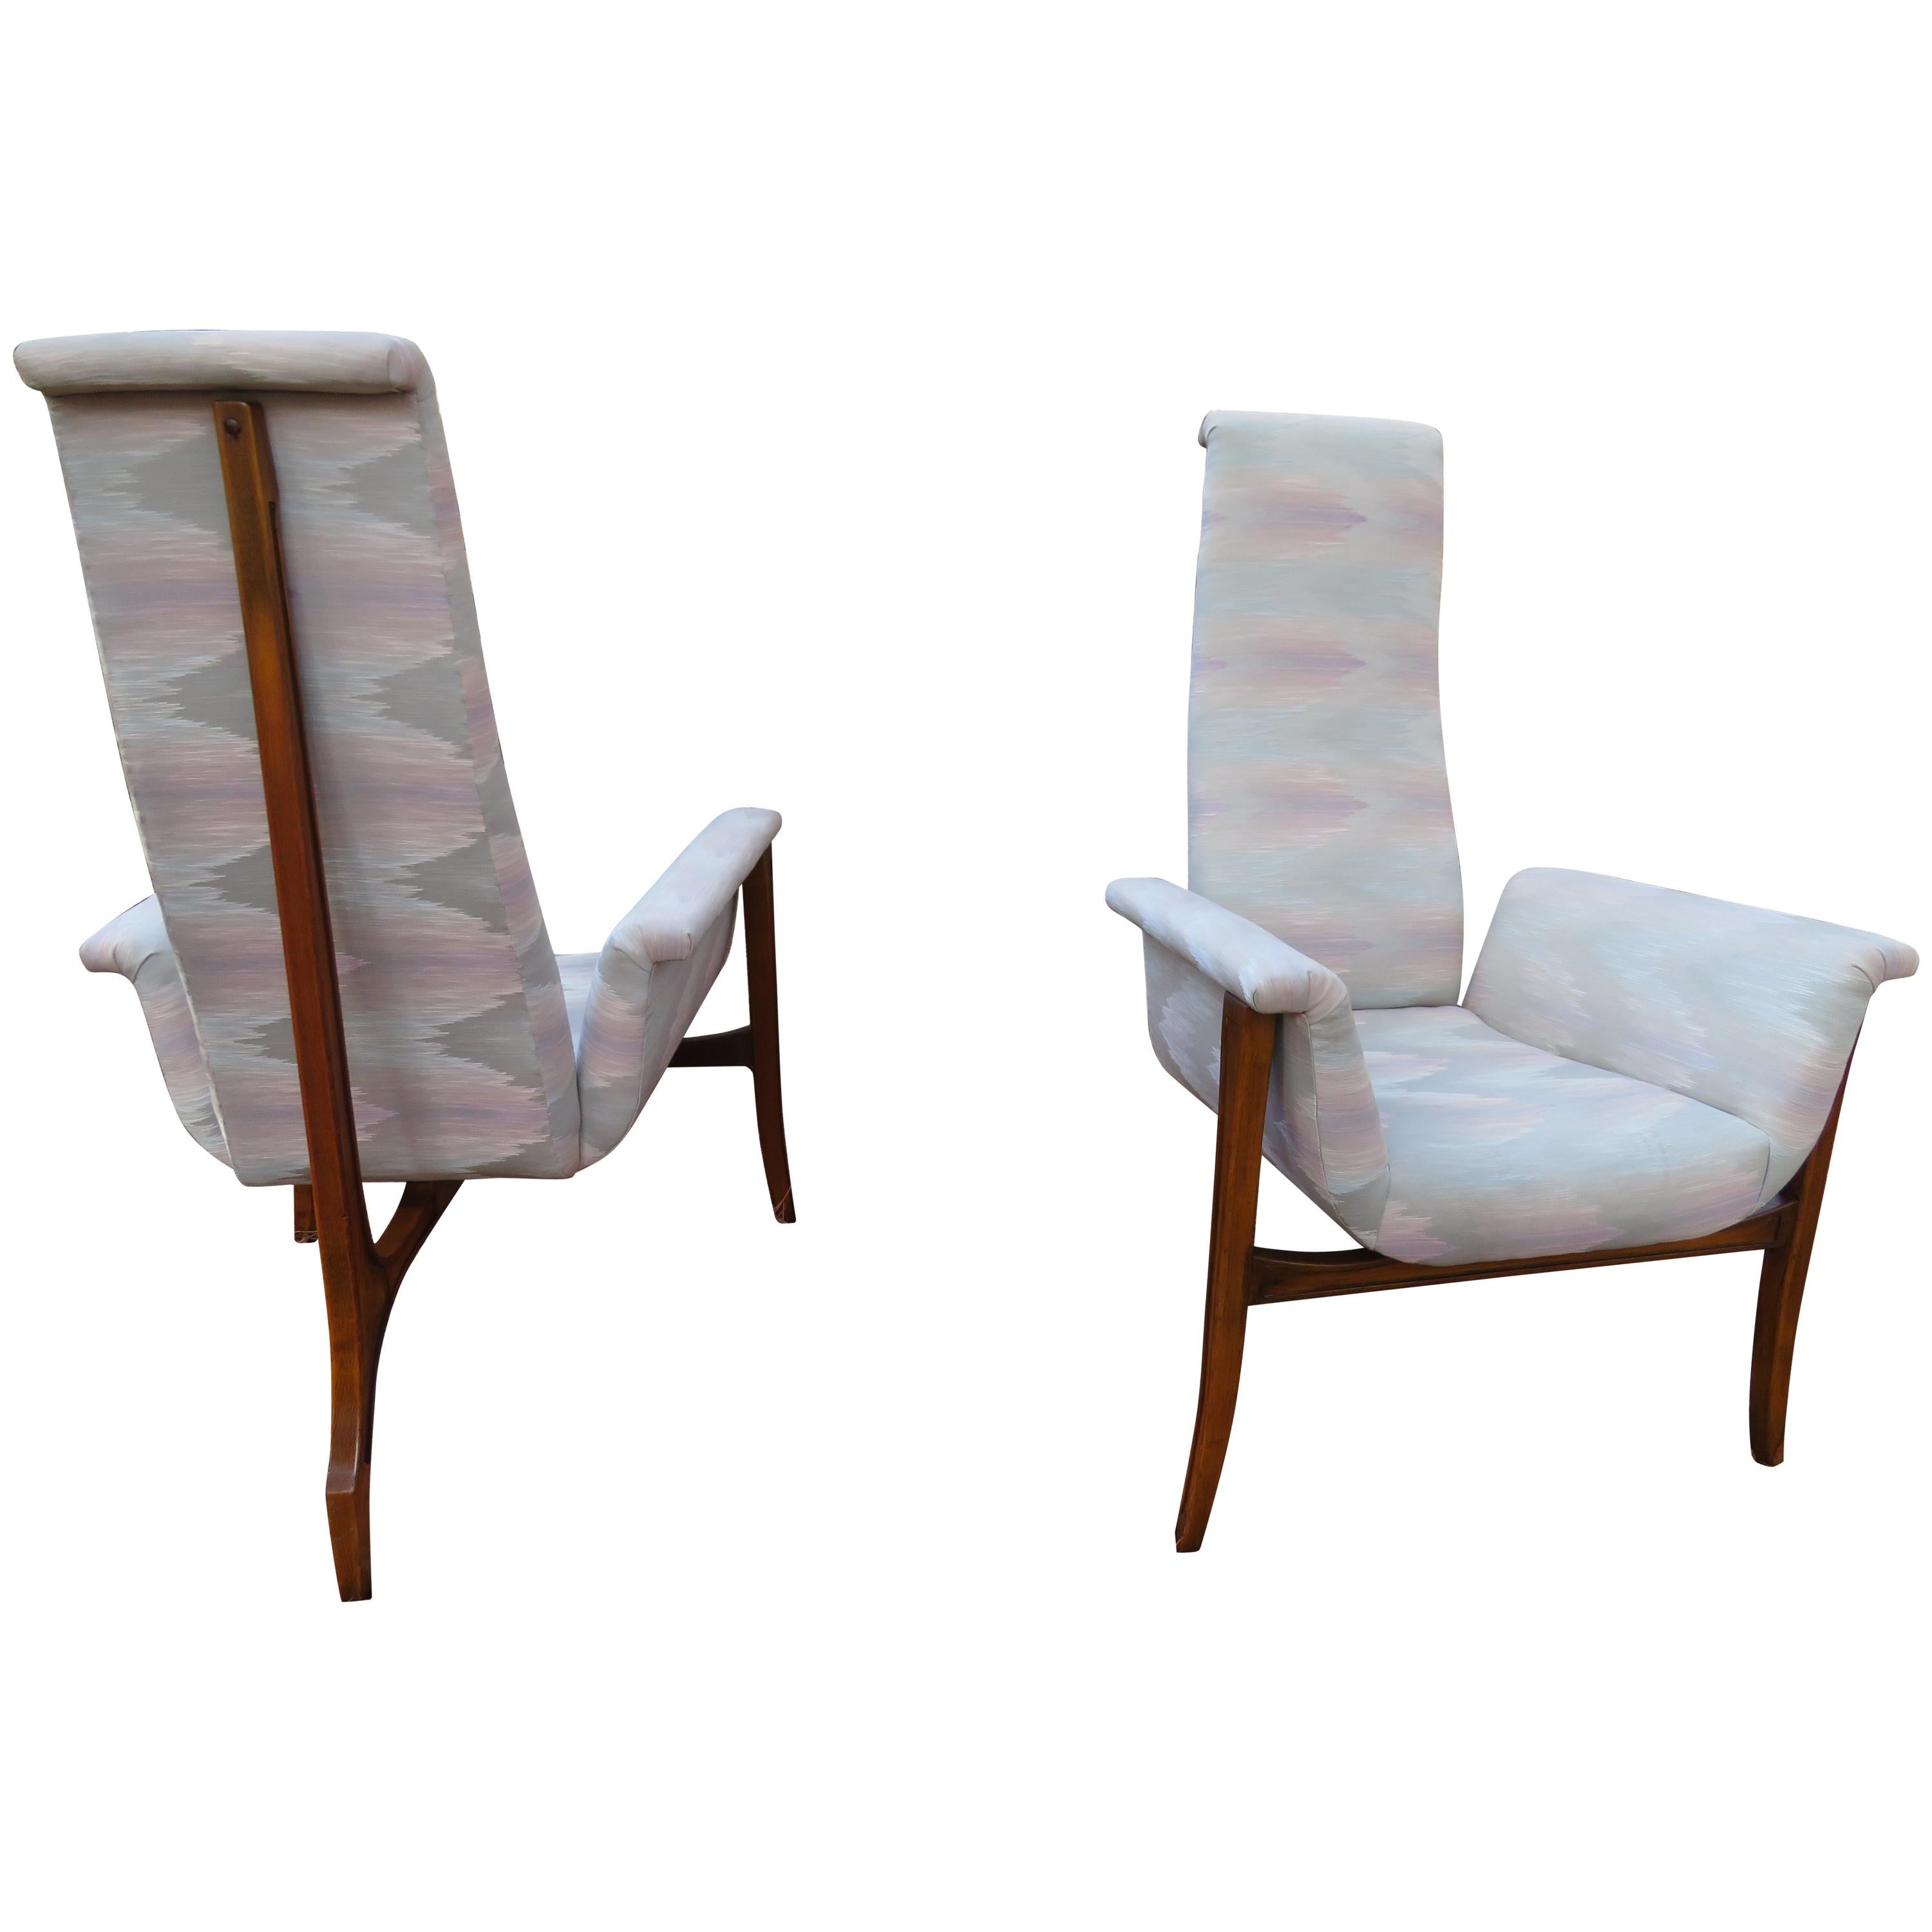 Magnifique paire de fauteuils de salon sculpturaux à 3 pieds, modernes du milieu du siècle dernier